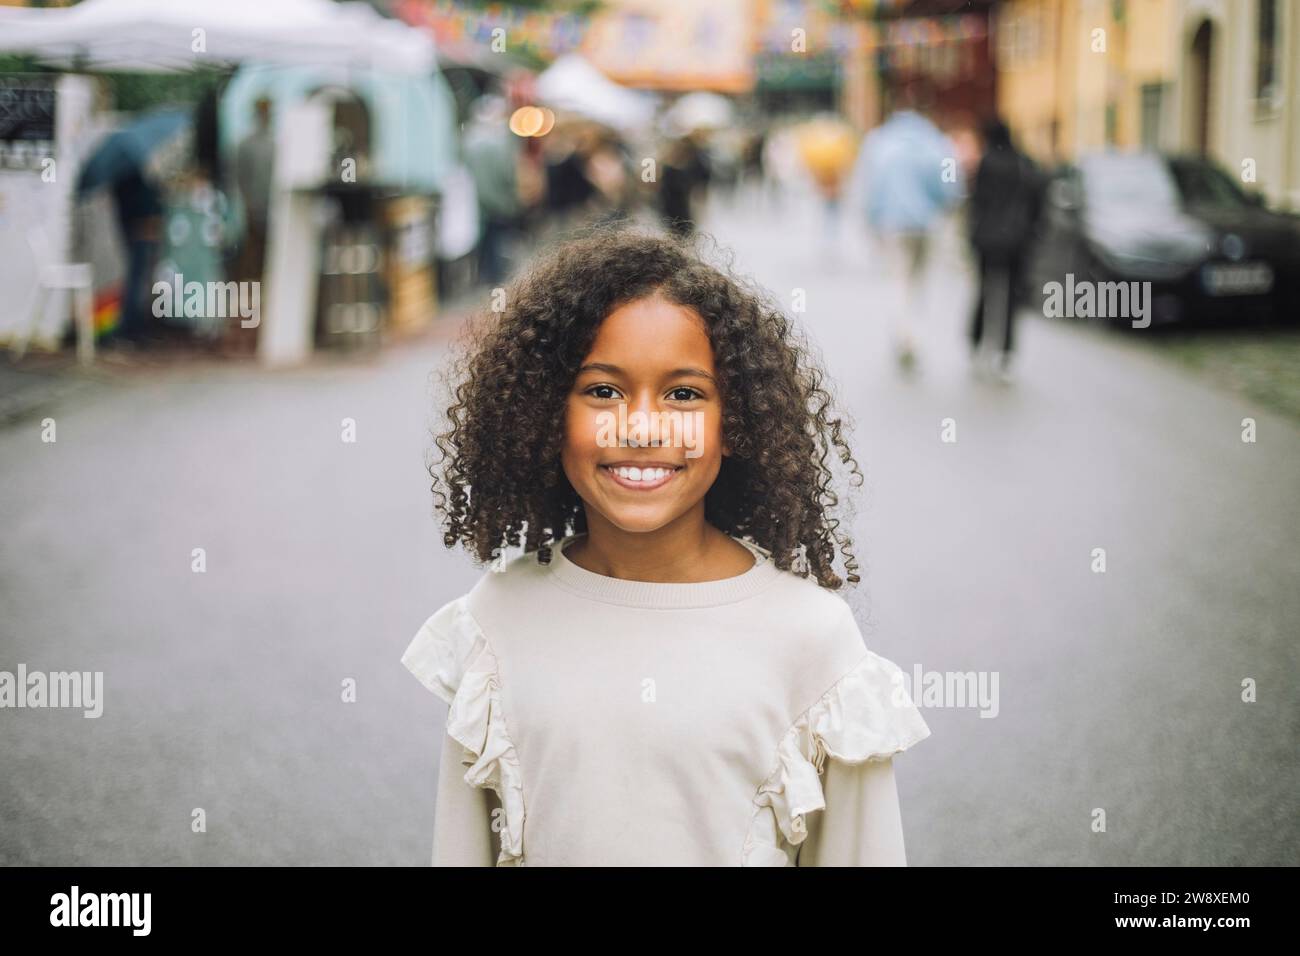 Ritratto di una ragazza sorridente con i capelli ricci al parco divertimenti Foto Stock